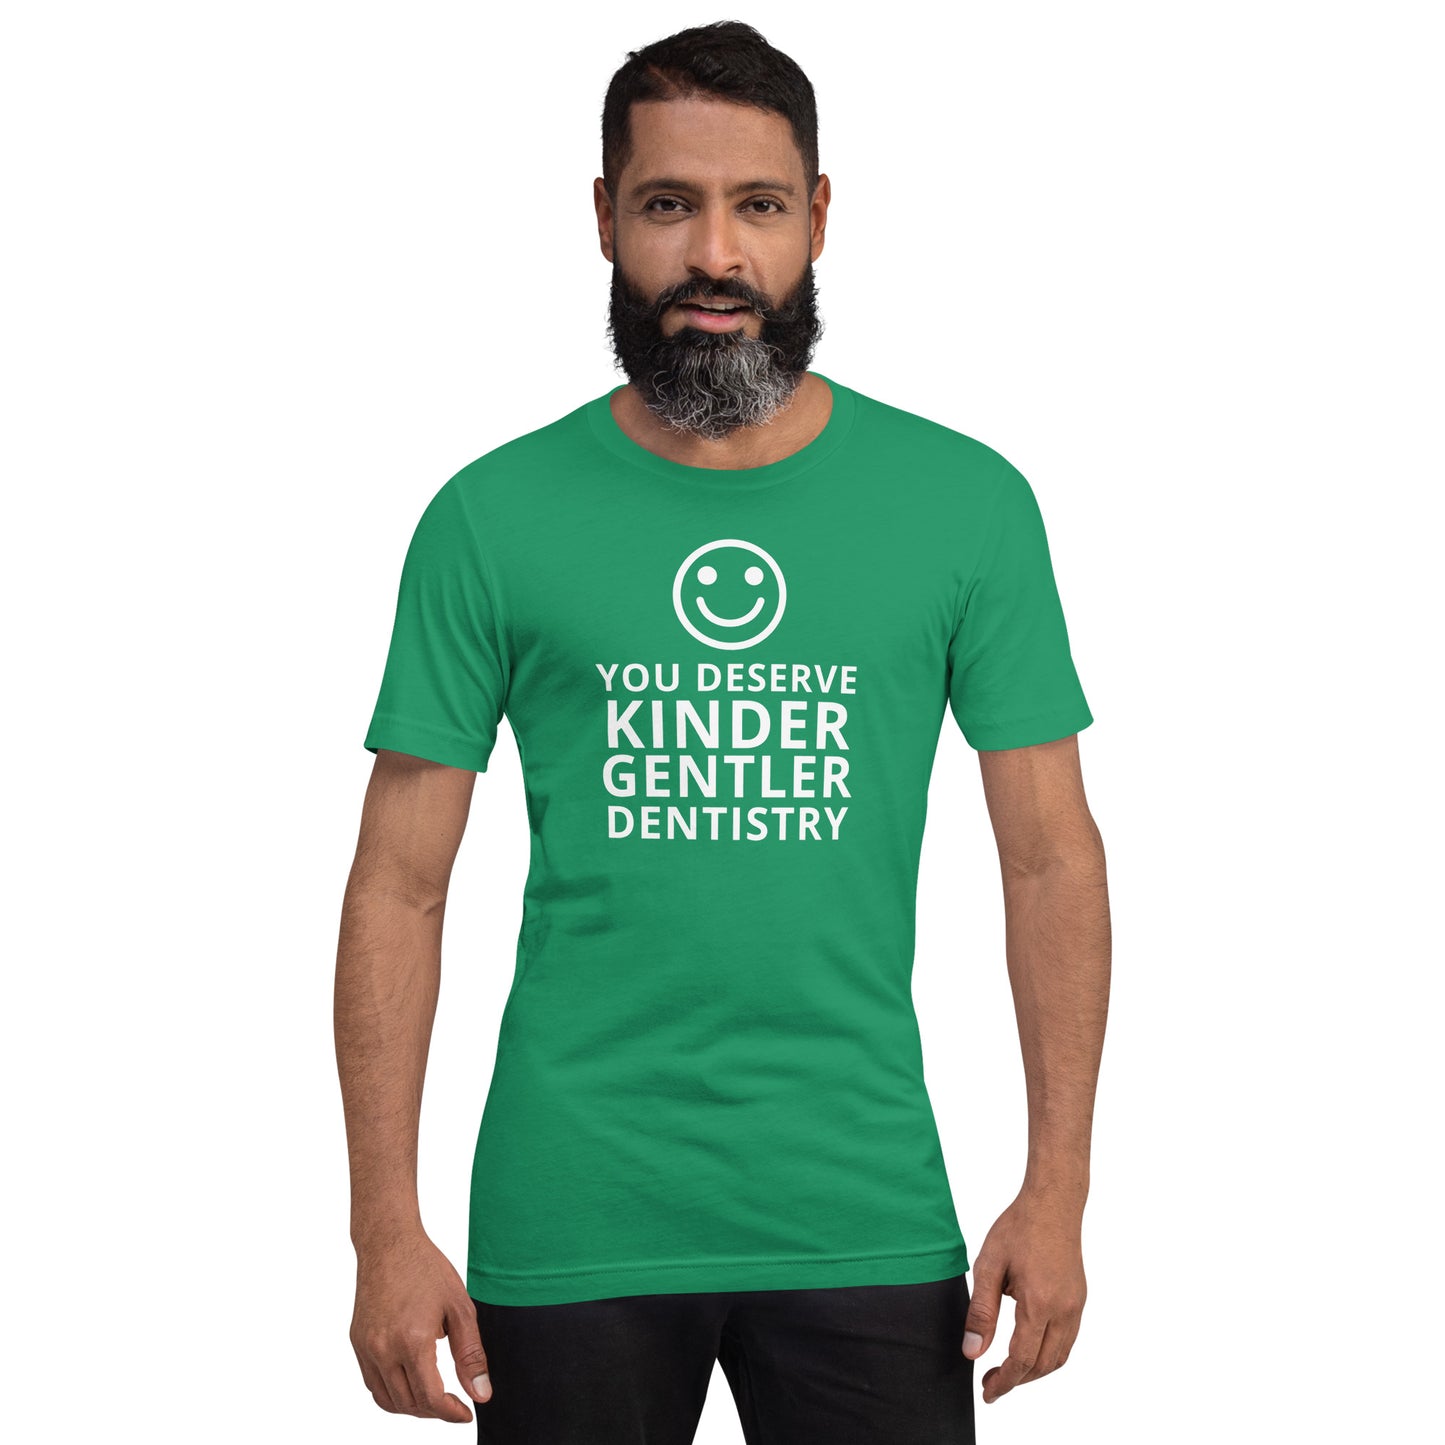 Kinder Gentler Dentistry - Unisex T-Shirt